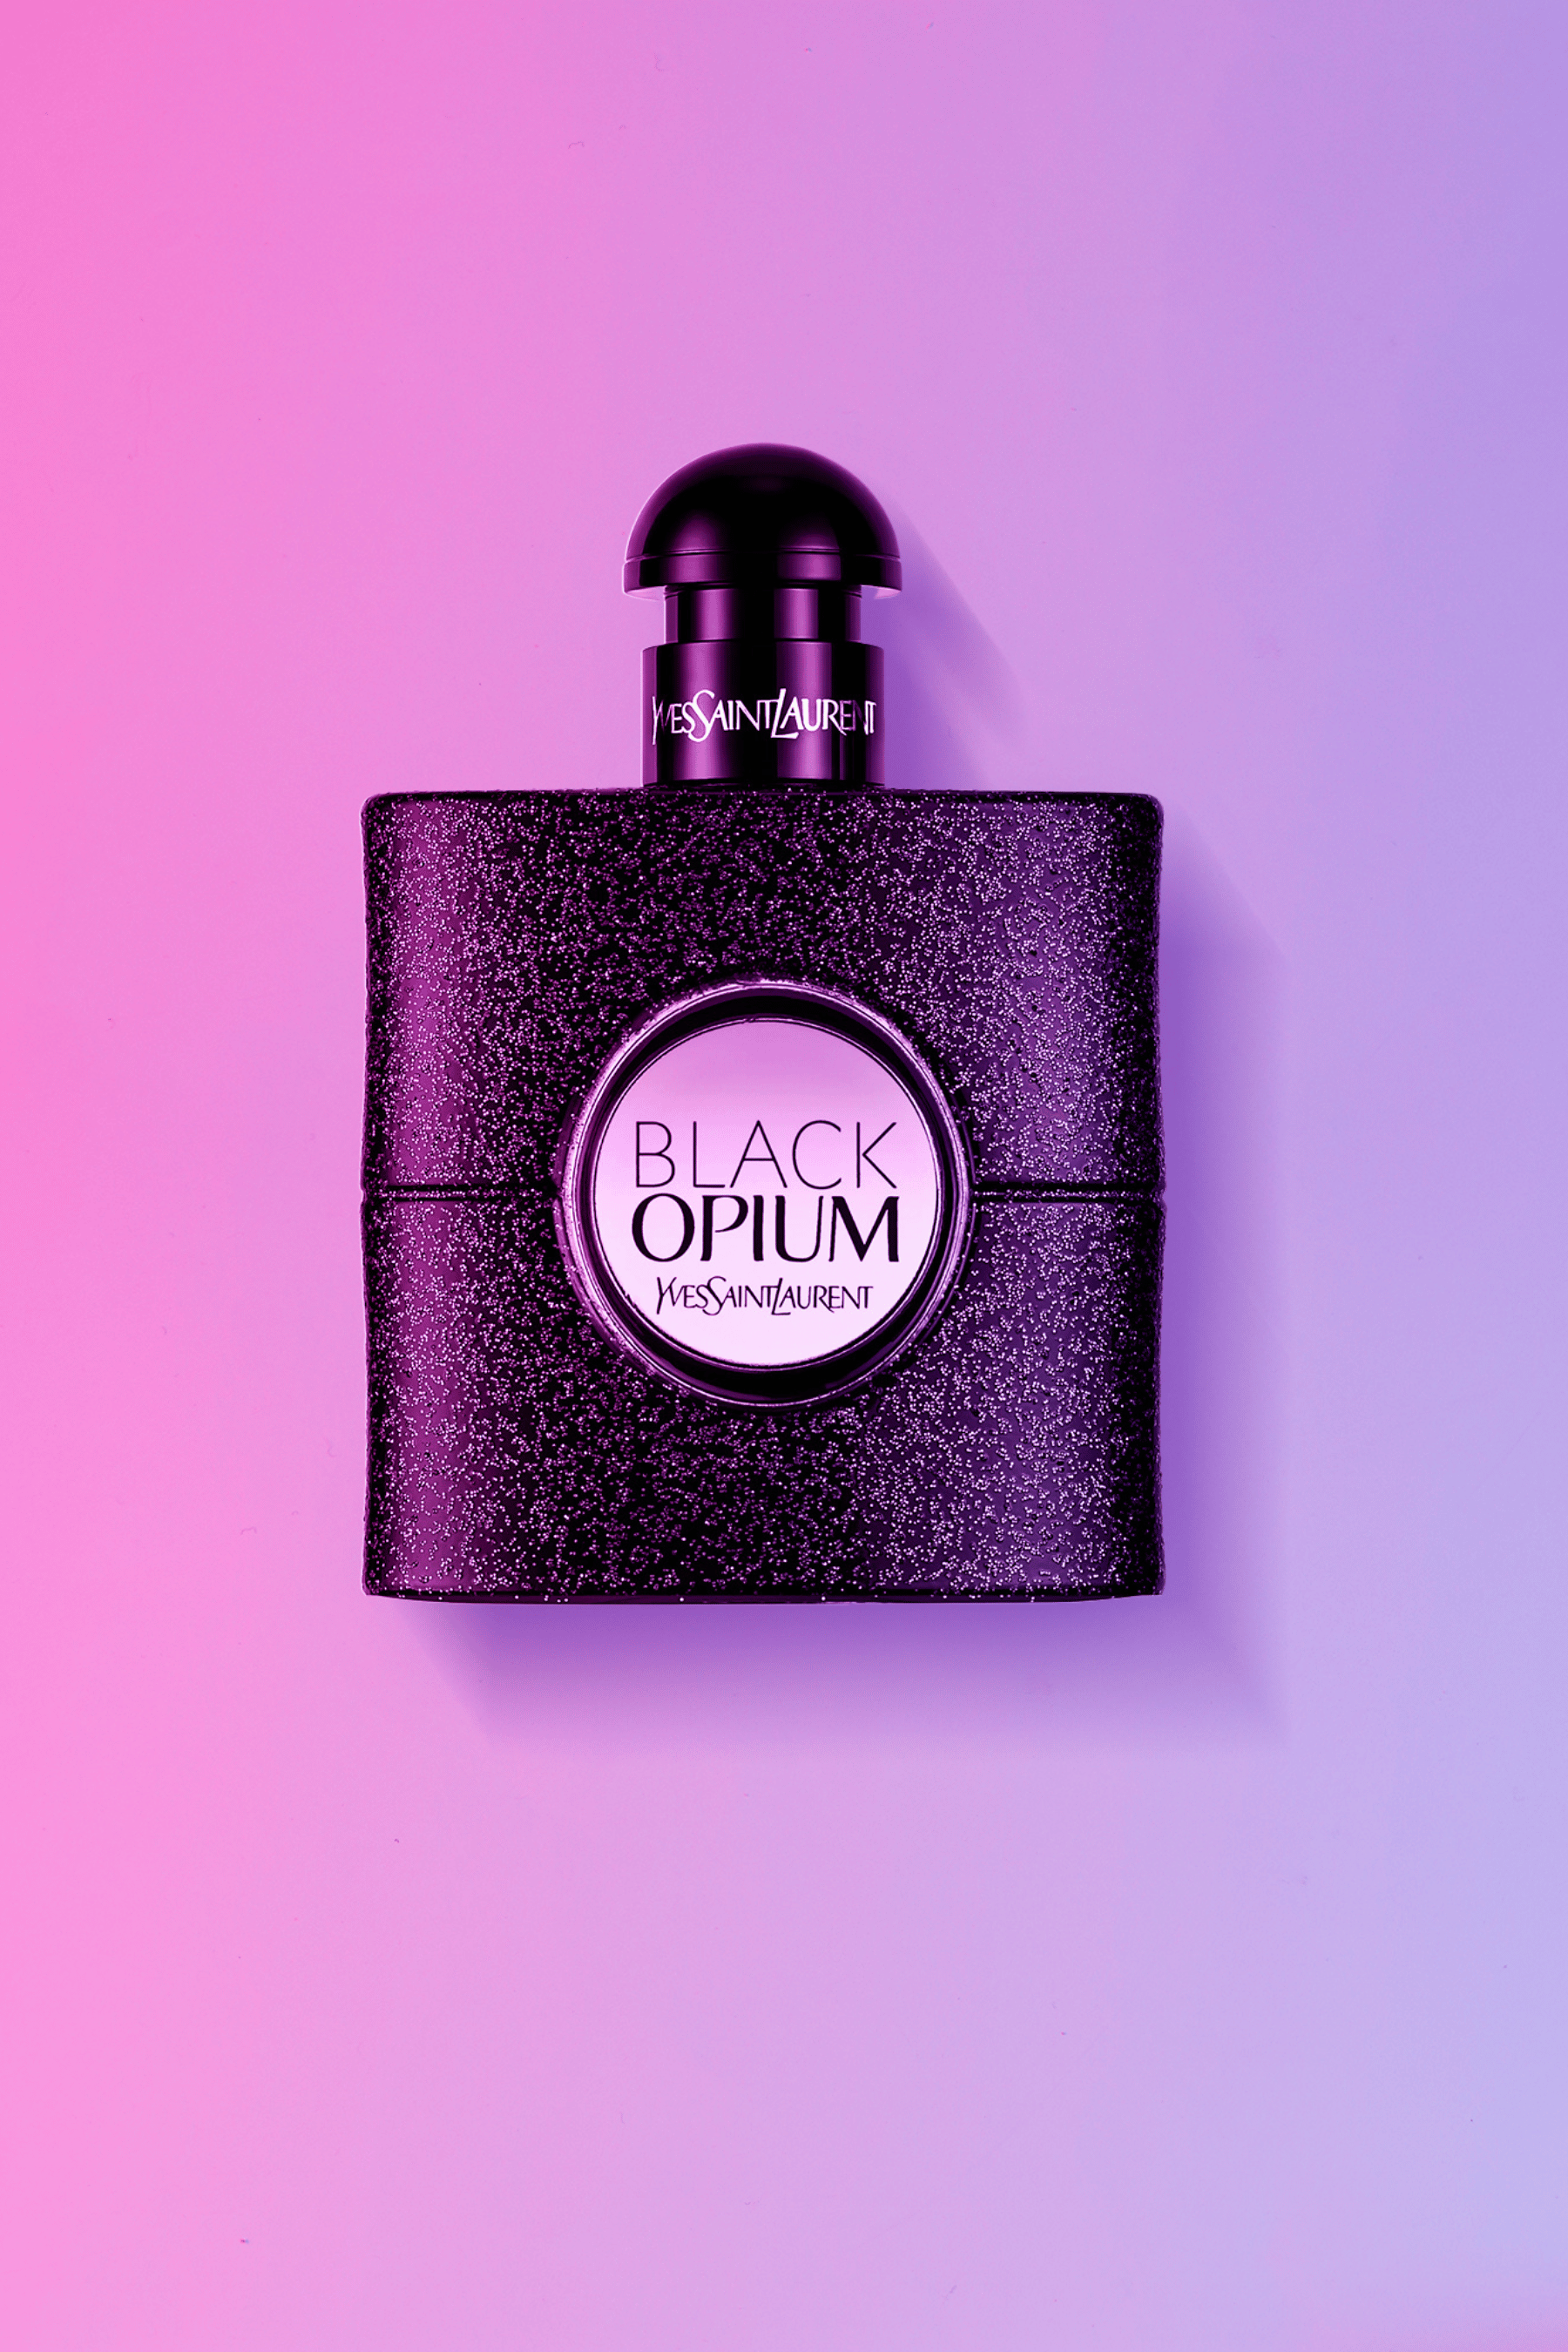 Yves Saint Laurent Black Opium Extreme Eau de Parfum - 3.0 oz